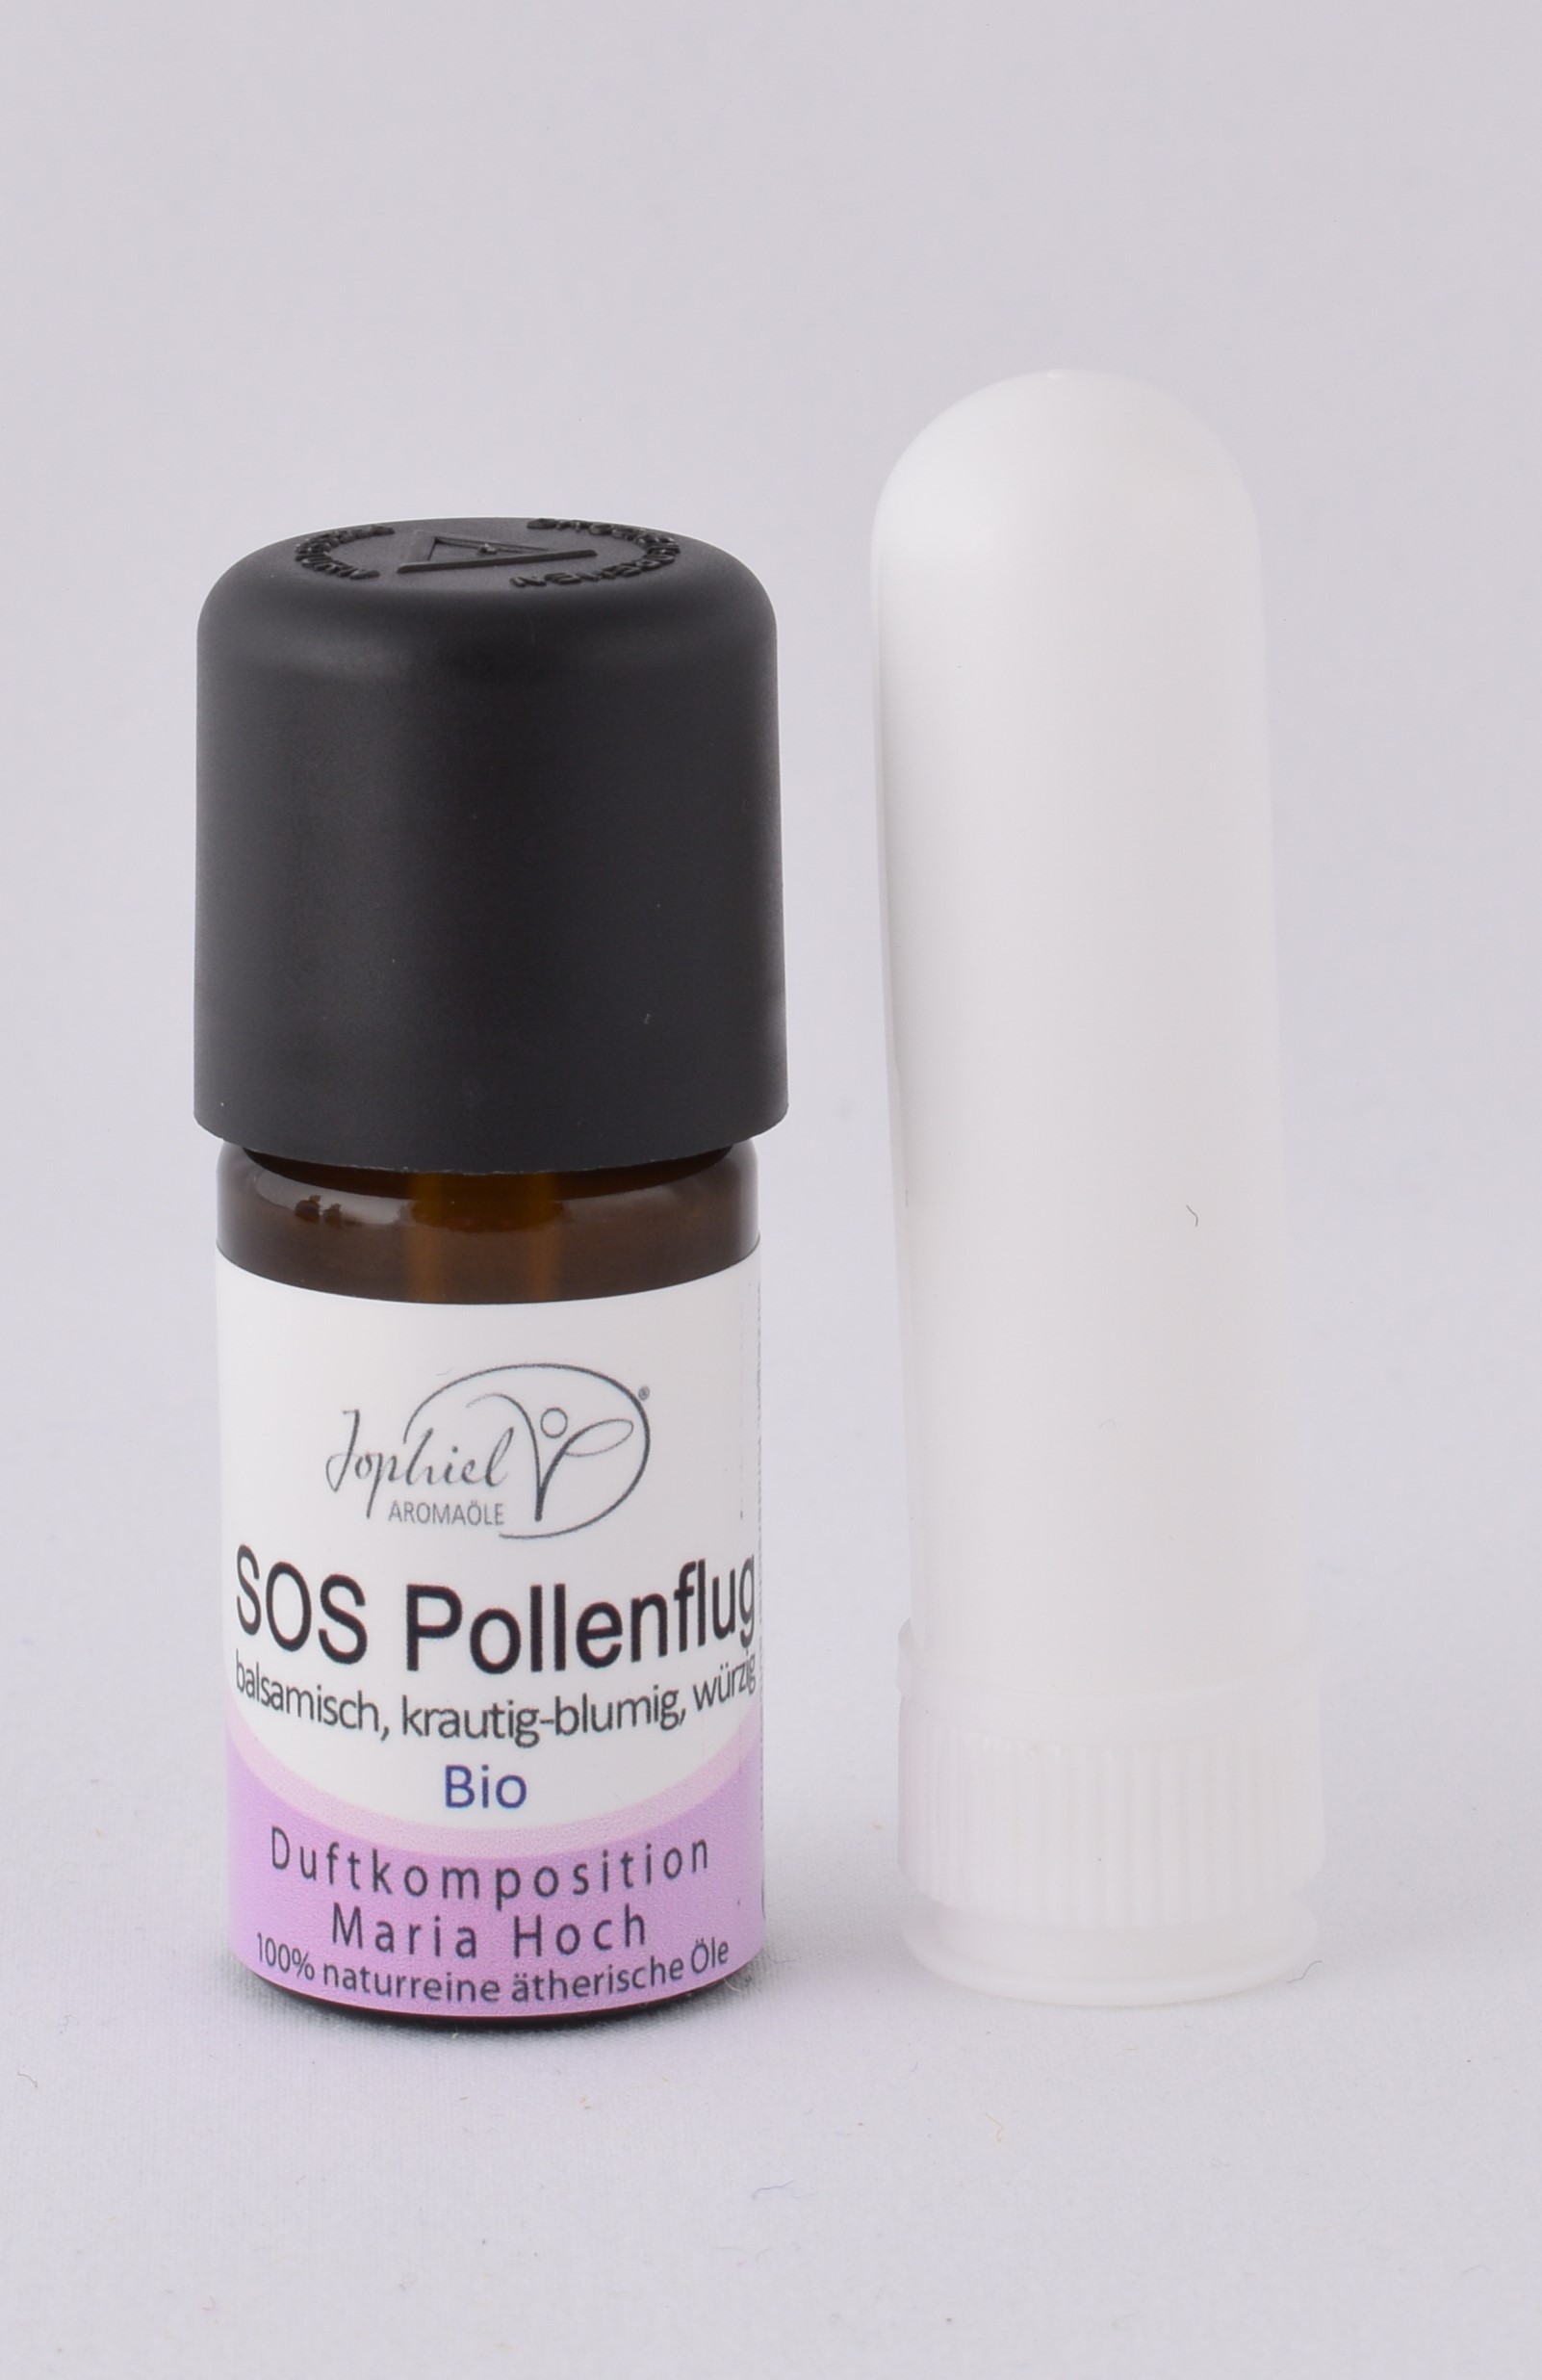 SOS Pollenflug Duftkomposition Bio 5 ml mit Riechstift Angebot März und April